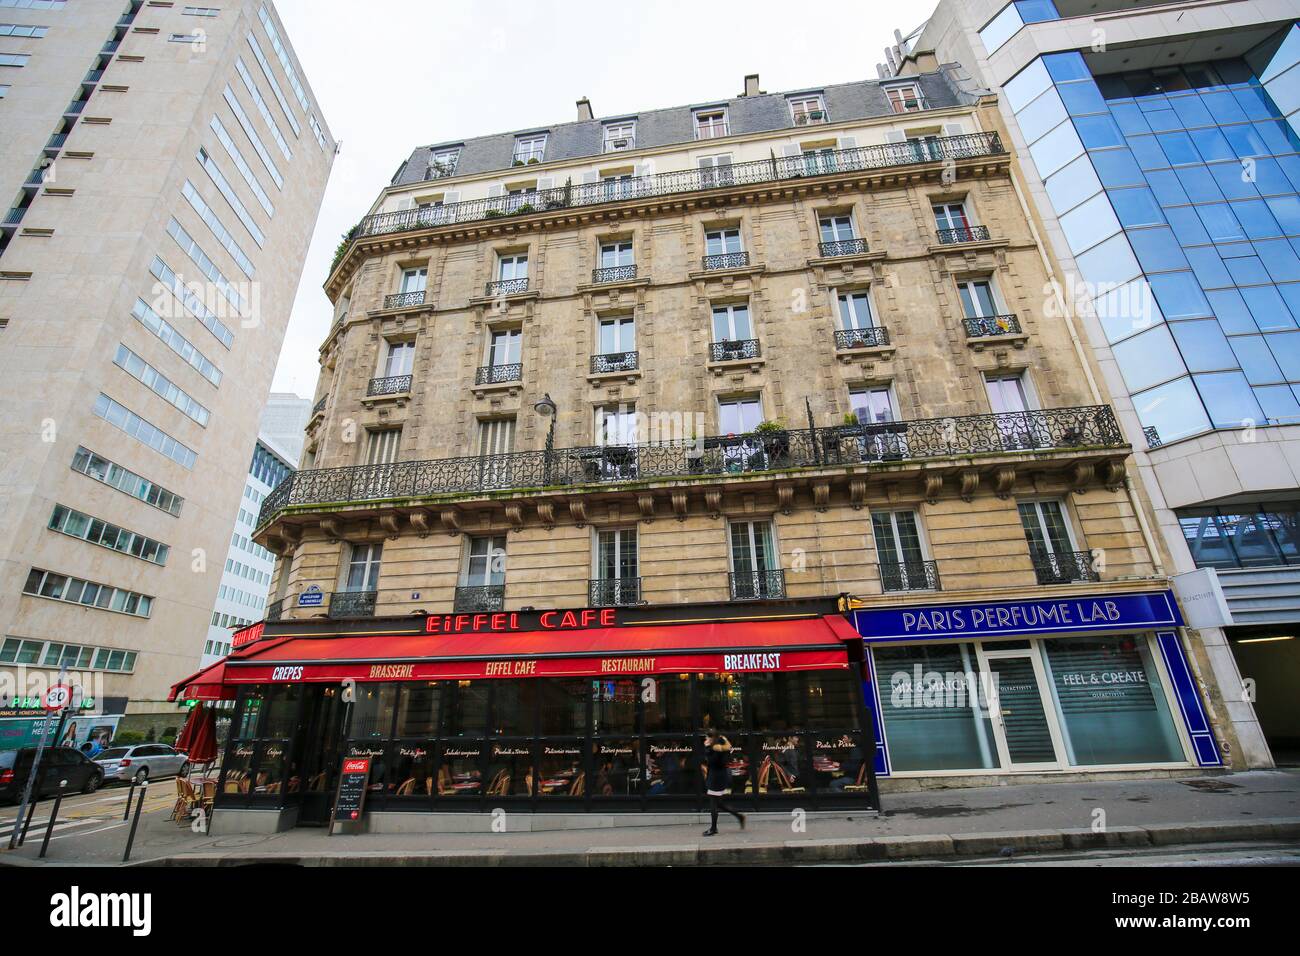 Paris, France - 11 février 2019 : café Eiffel dans une rue typique de Paris, France Banque D'Images